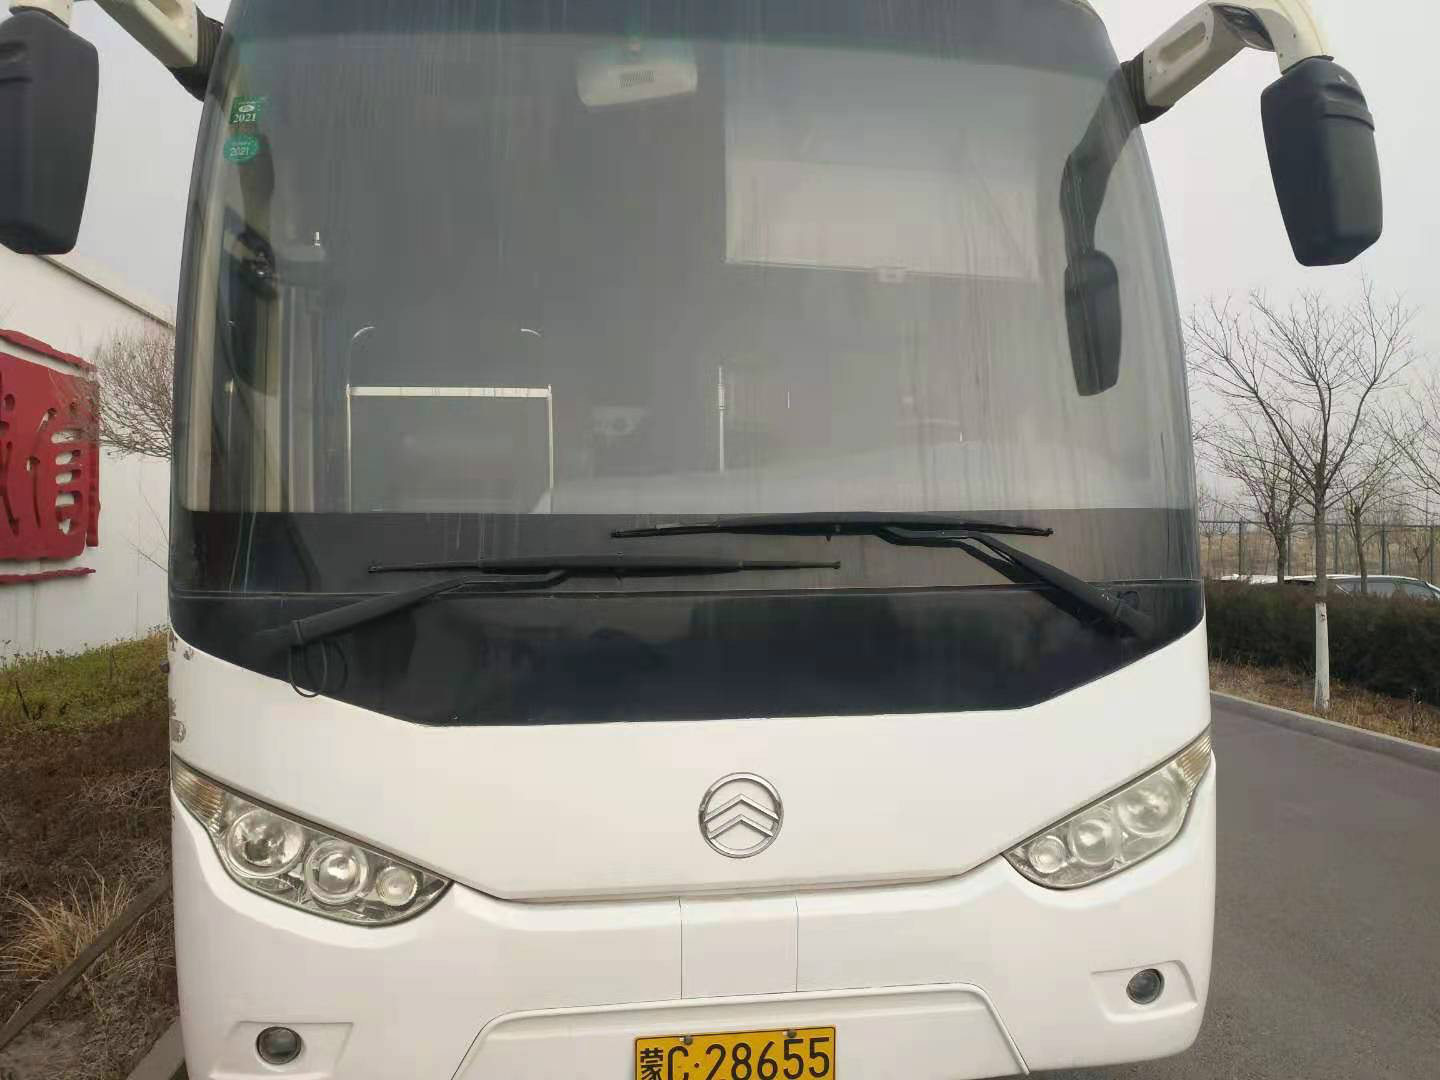 (蒙c28655)金旅牌xml6127j13大型普通客车7.